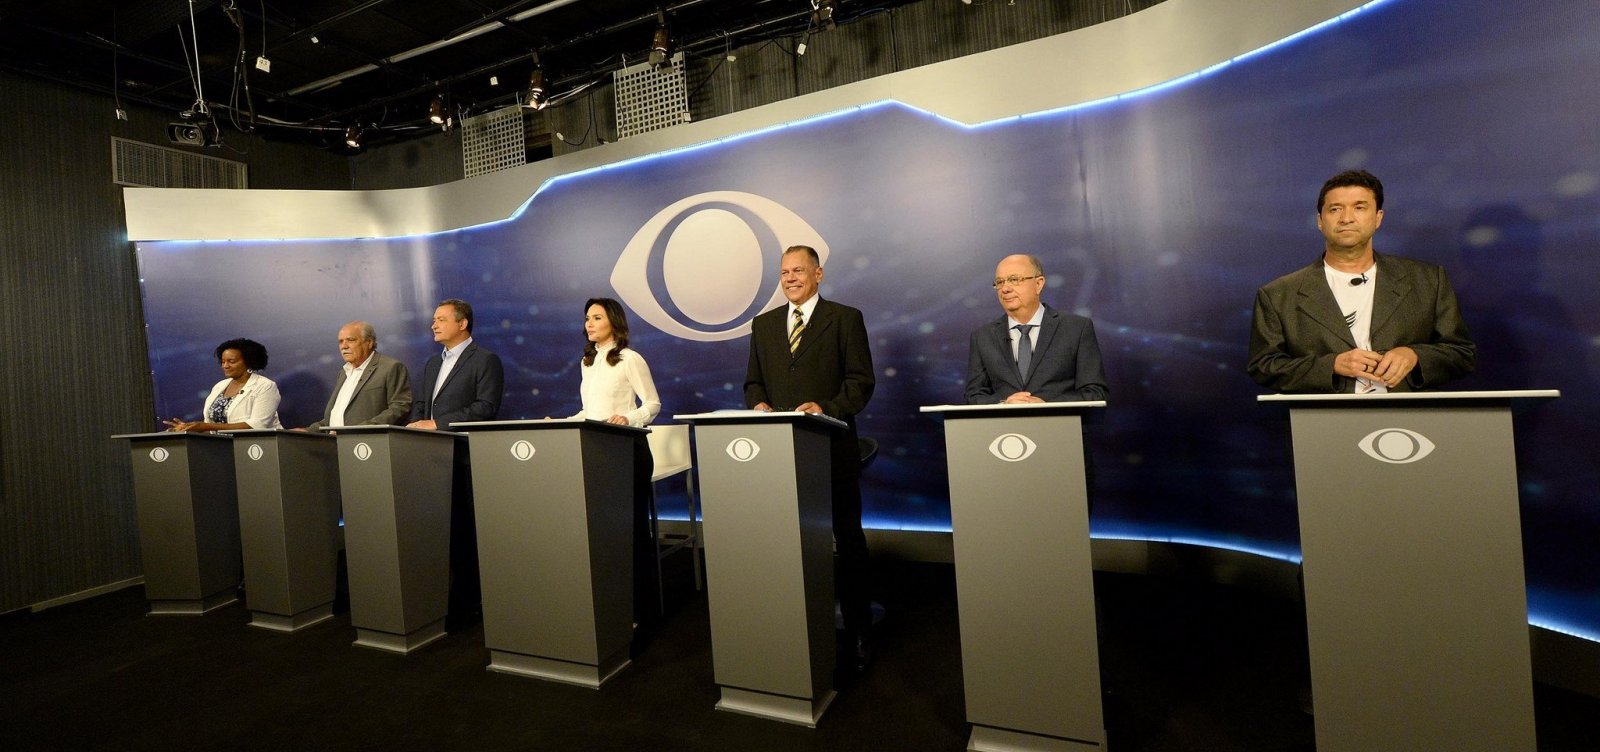 59987,candidatos-ao-governo-da-bahia-vao-participar-de-mais-cinco-debates-ate-o-1o-turno-3